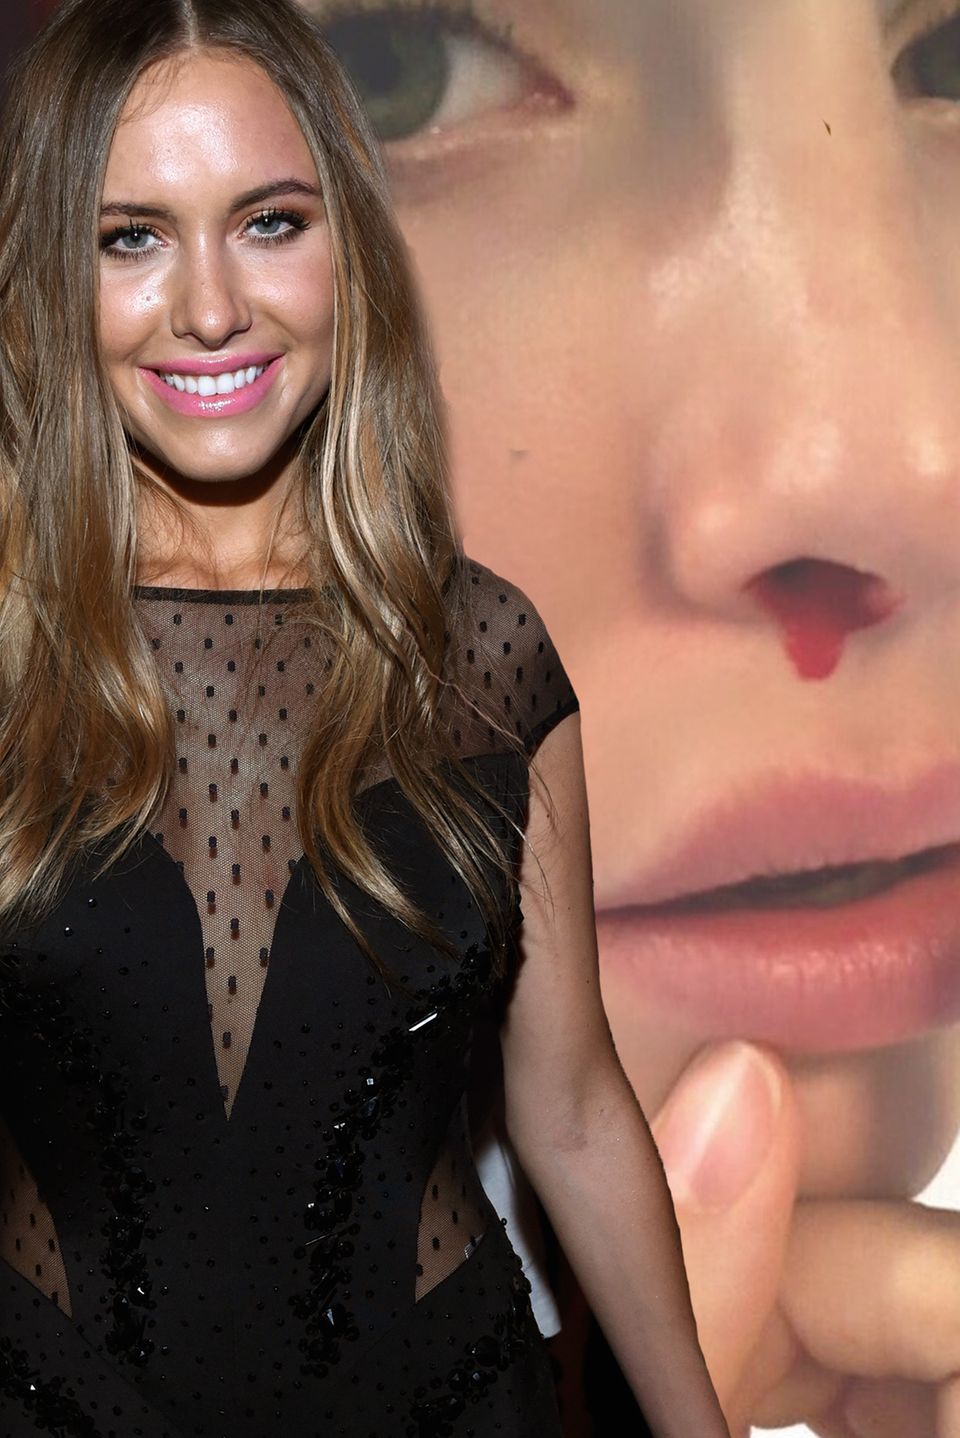 Alena Fritz zeigt ihre blutige Nase auf Instagram